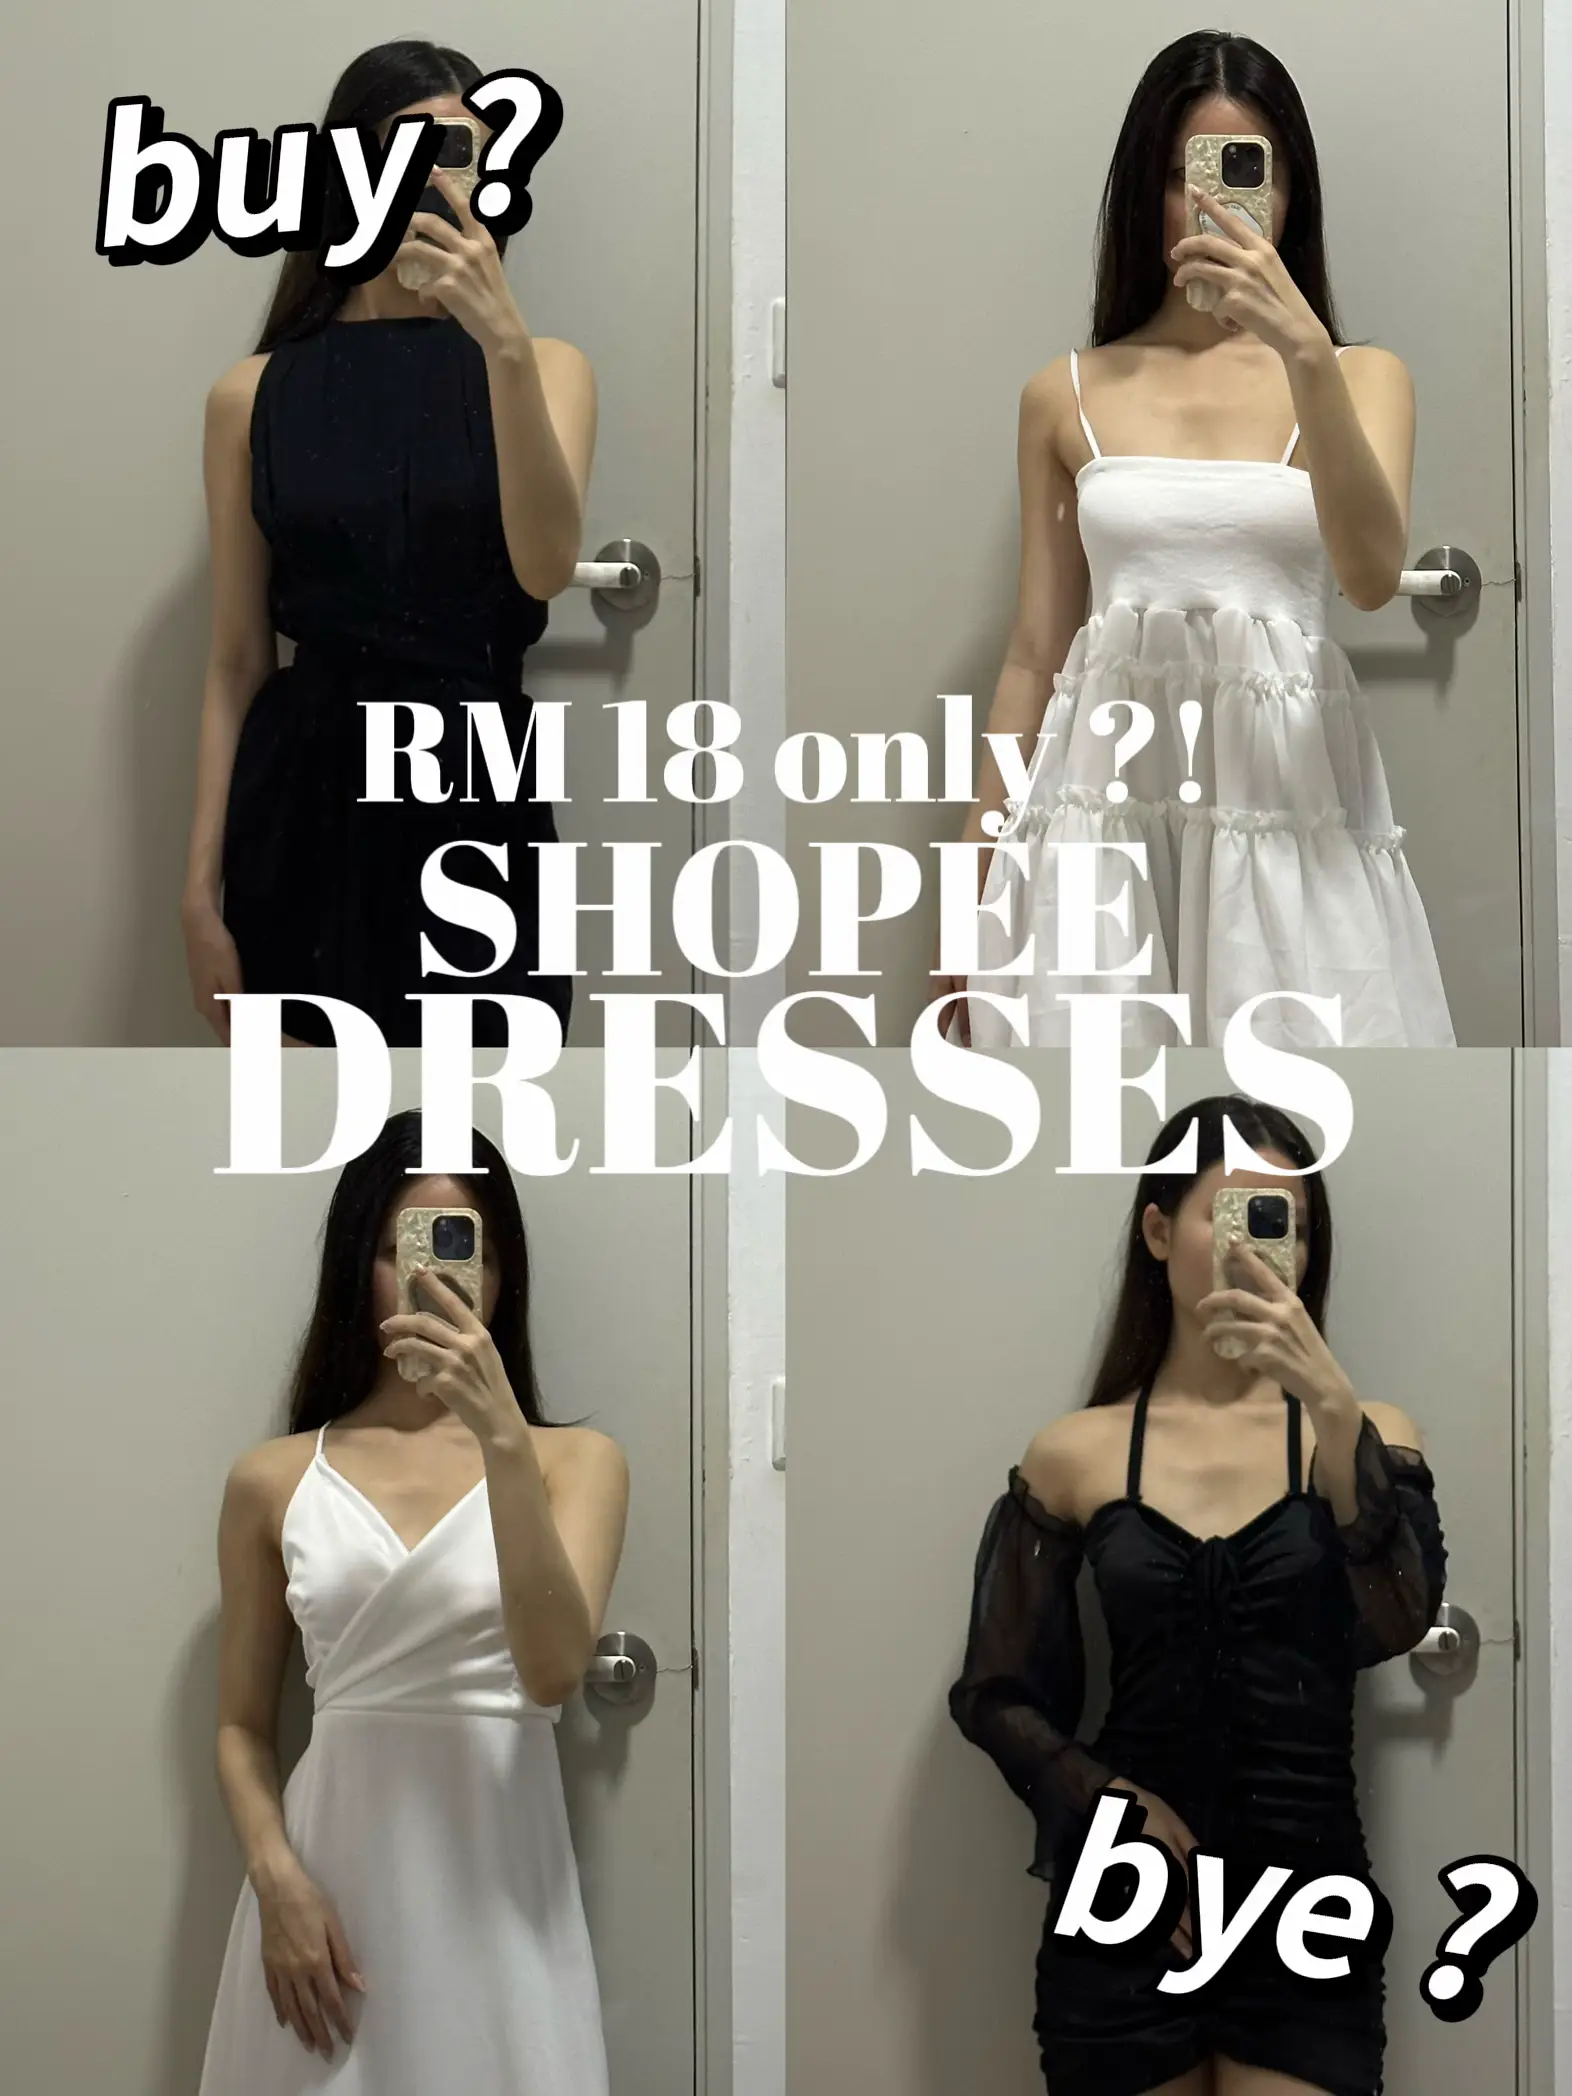 dress women korean style baju perempuan murah cantik puff Sleeve